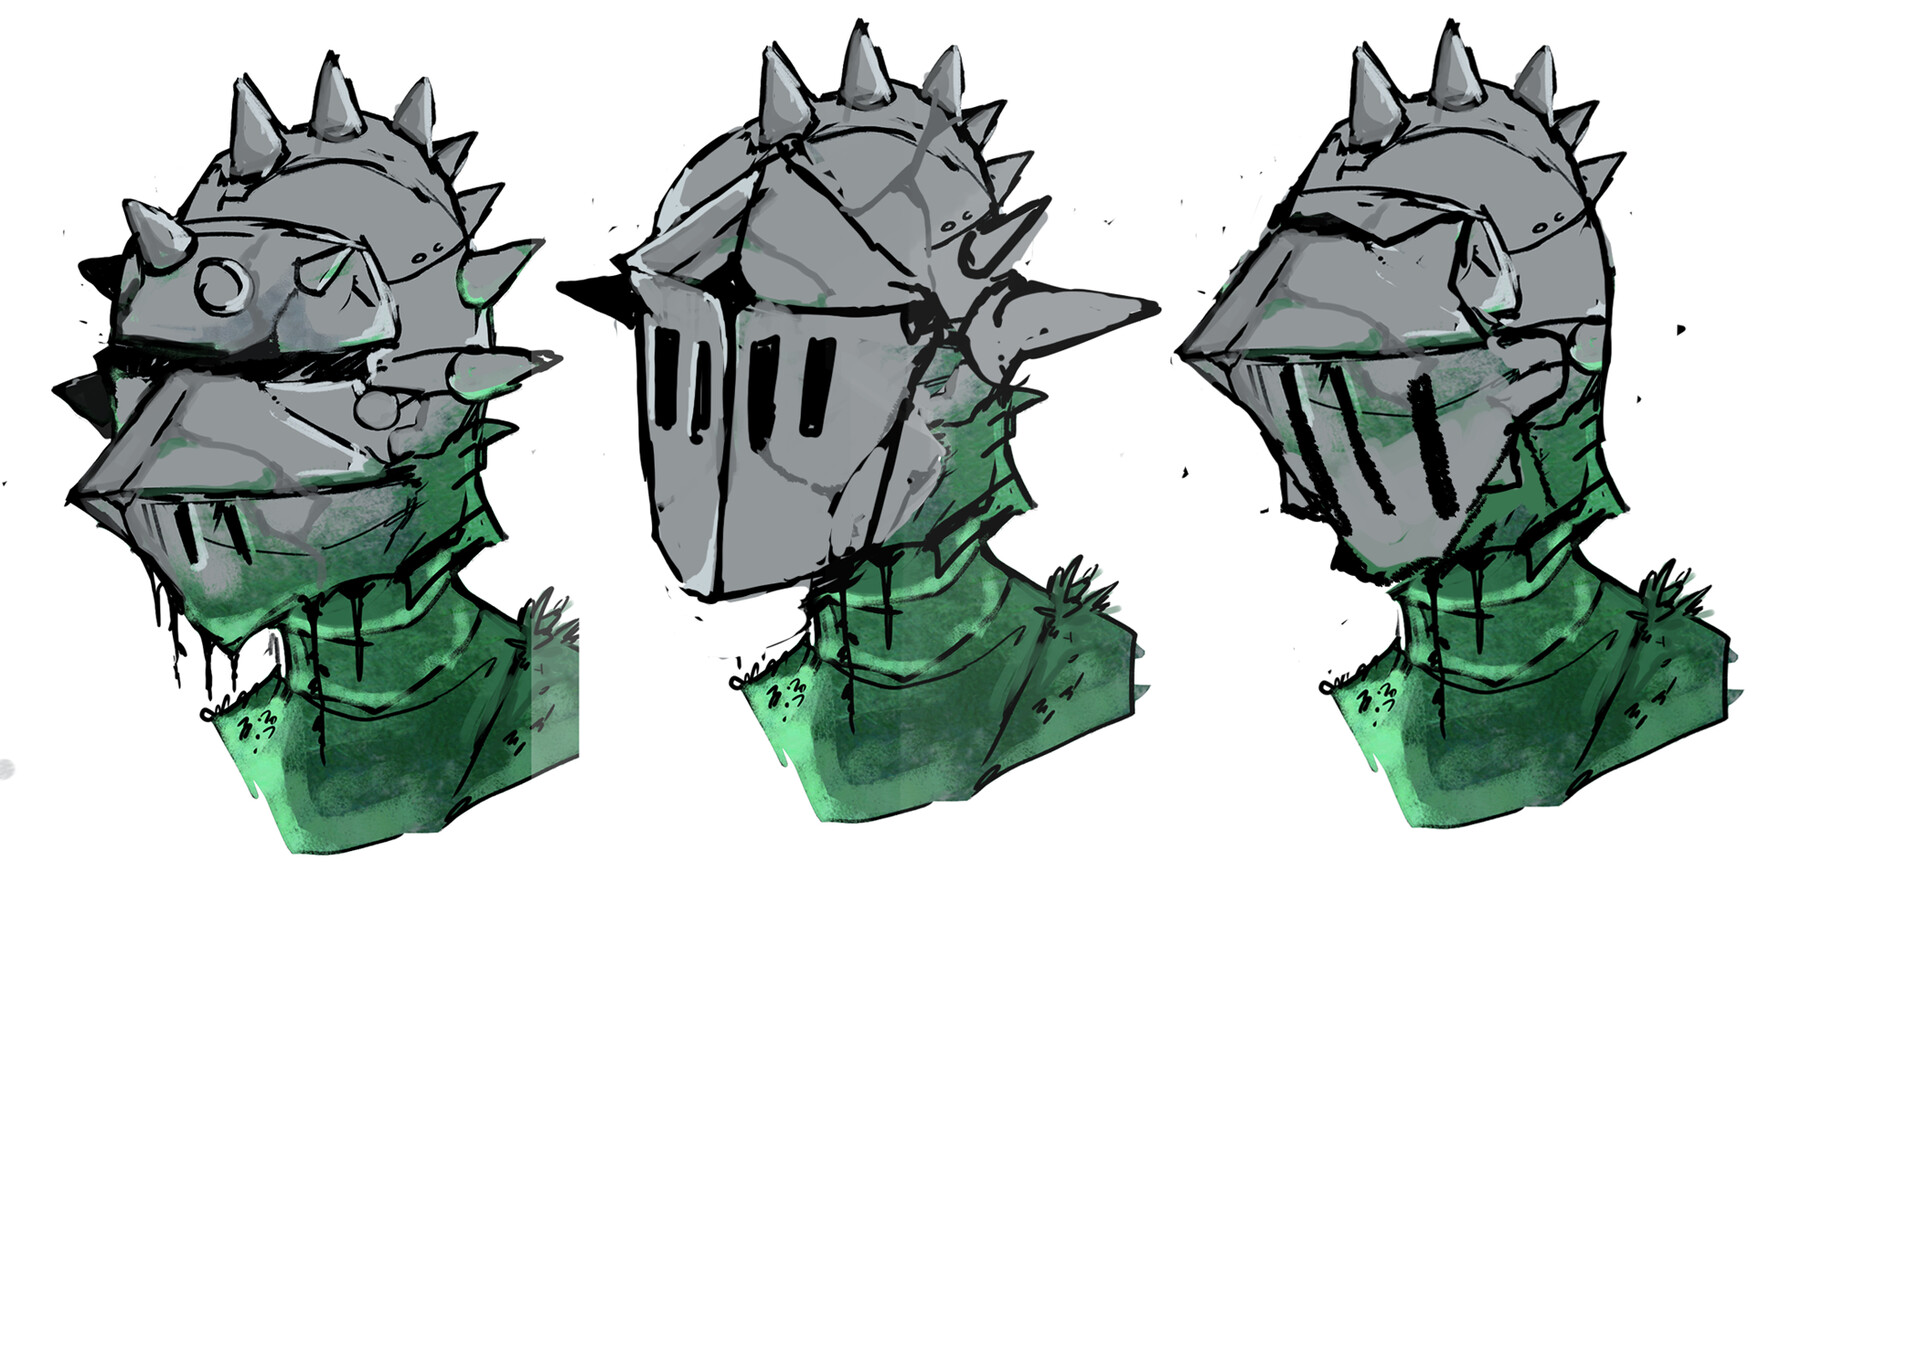 knight armor helmet drawing